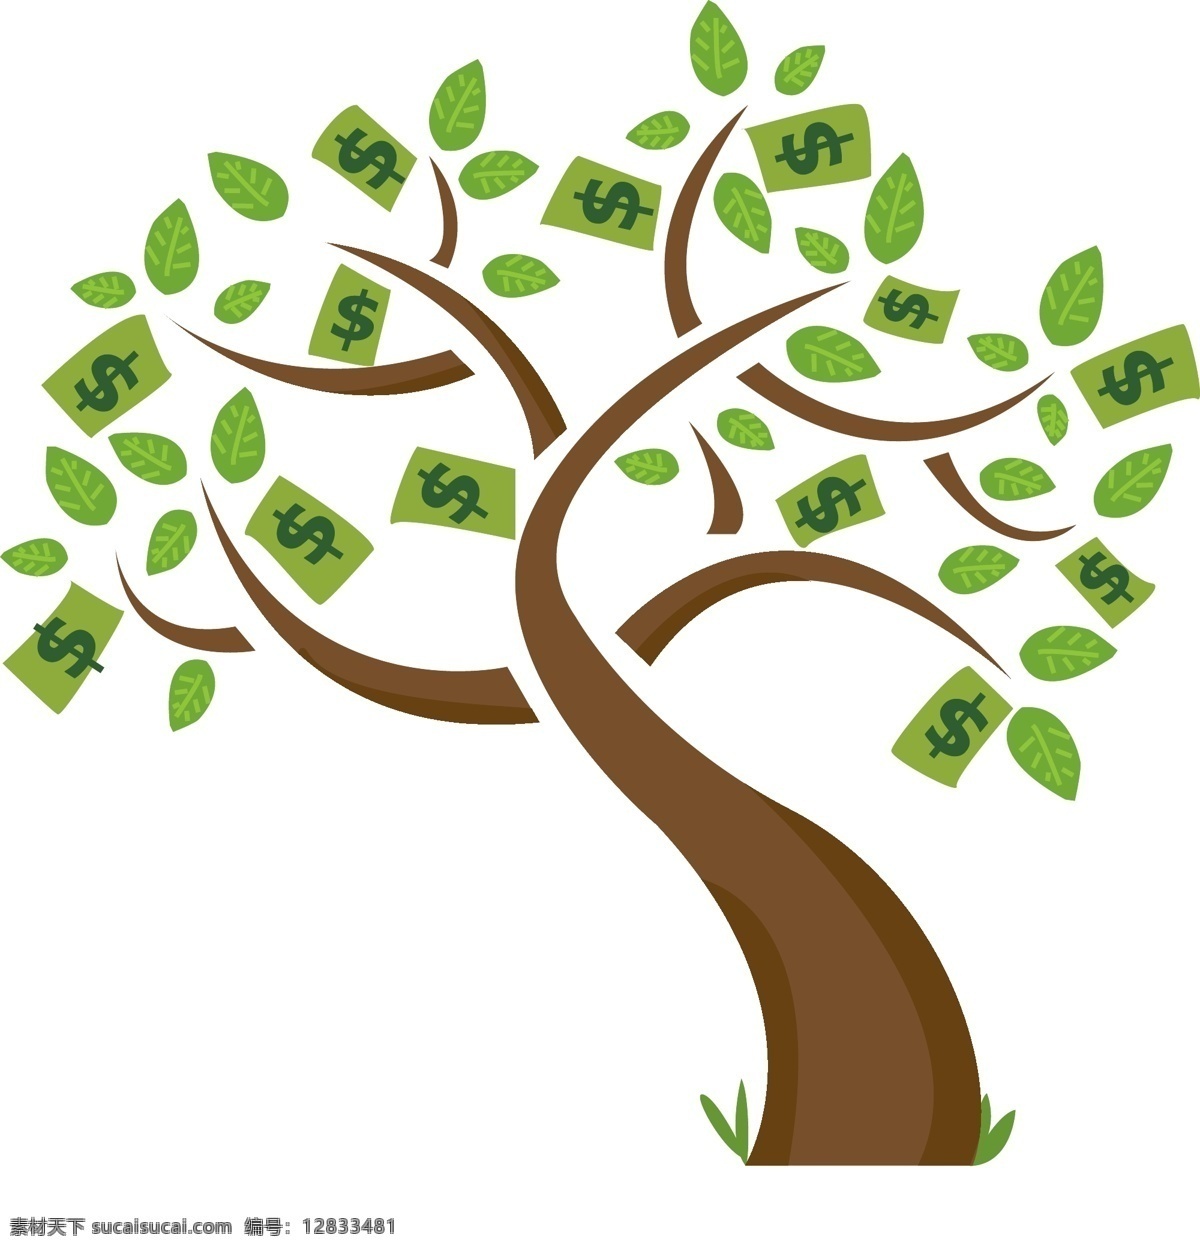 金钱树 树 货币 财政 增长向量 美元 美元符号 绿色 钱树 简约 绘画插图 债务 金融货币 商务金融 矢量